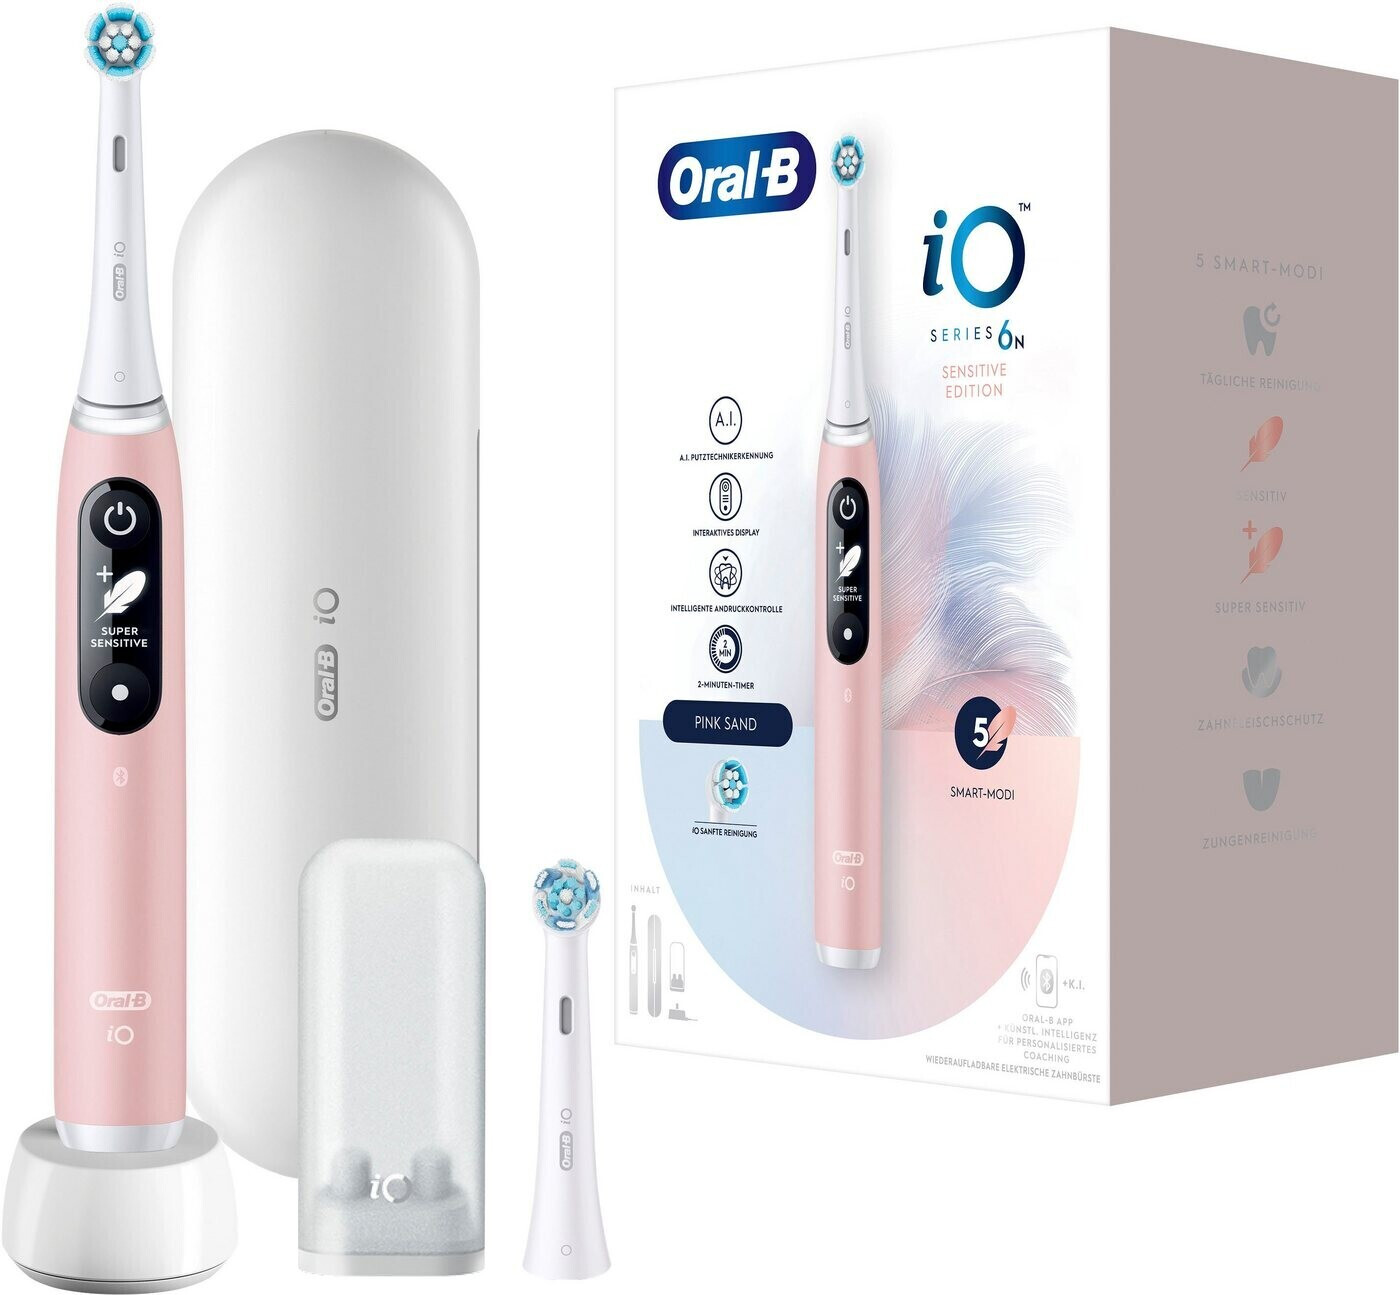 Oral-B iO Series 6N Sensitive Edition Pink Sand, elektrische Zahnbürste